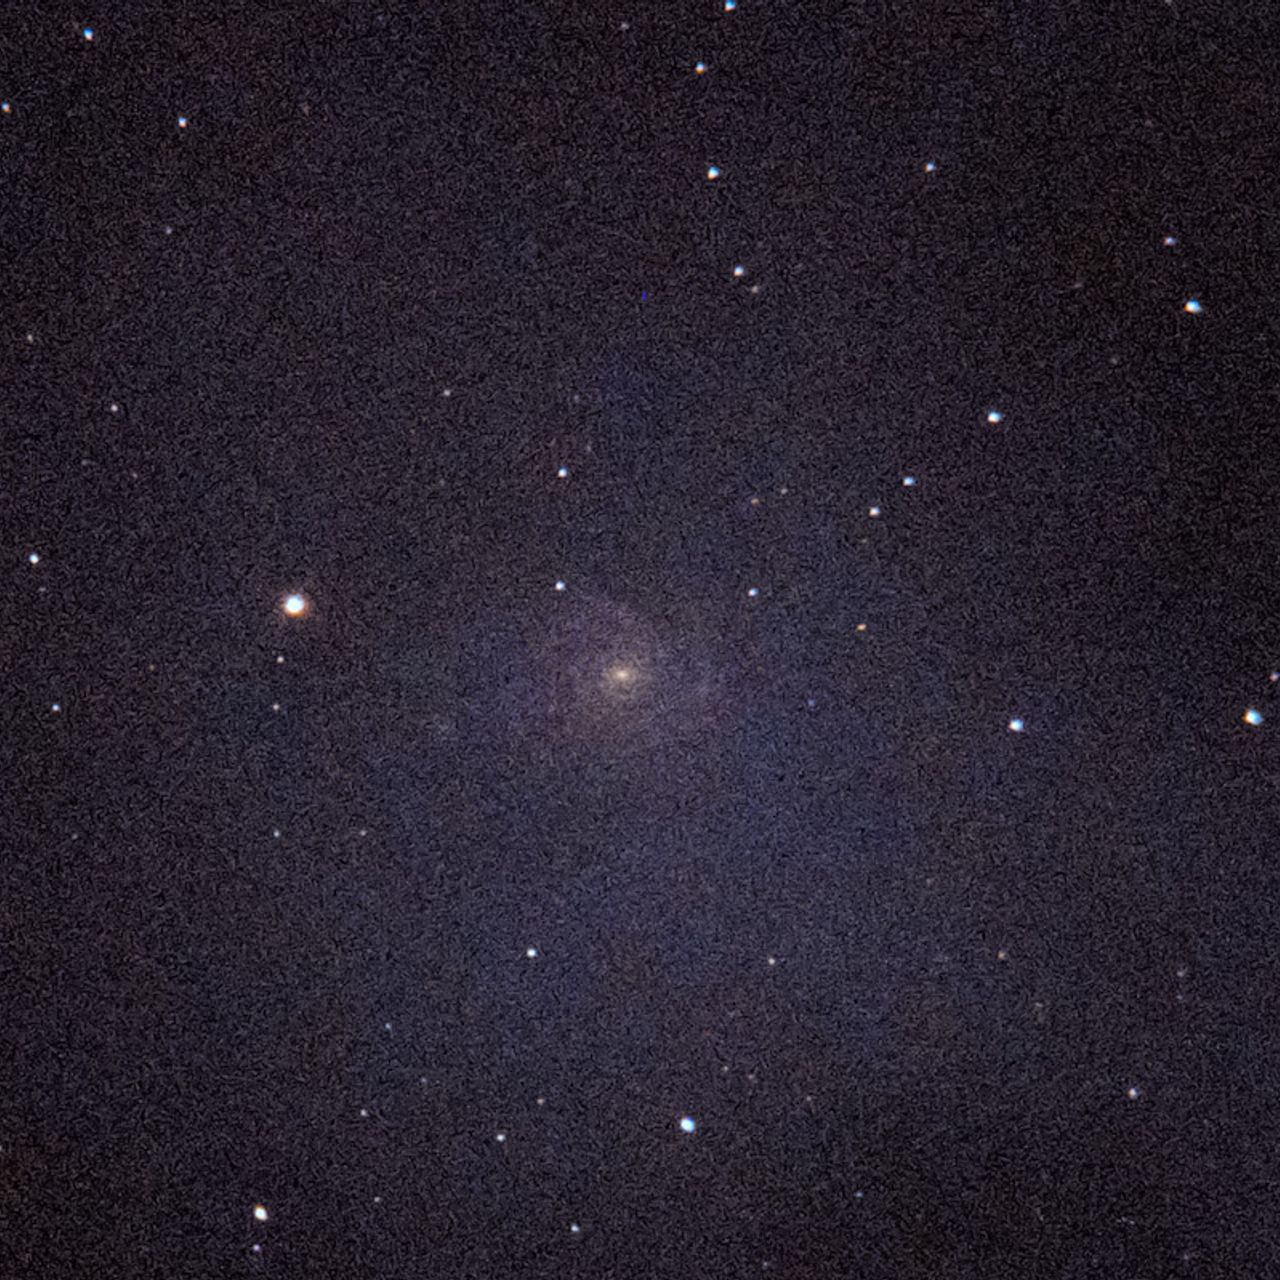 NGC1232